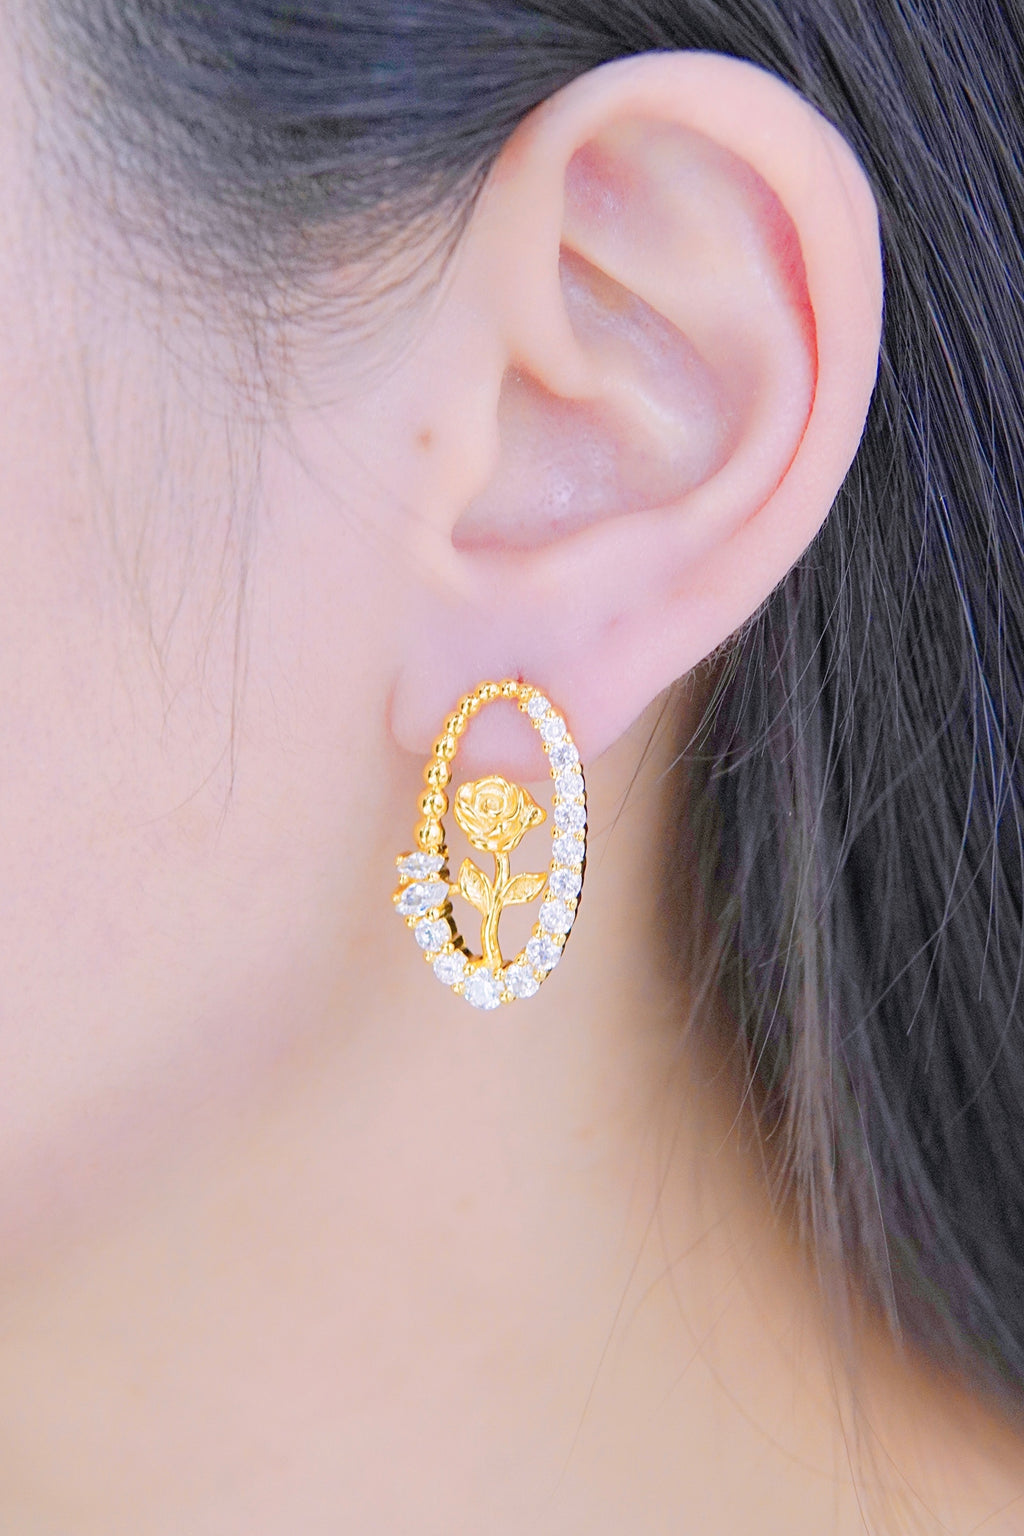 LAFIT · Rose Castle - Earrings 玫瑰花藝雕刻閃鑽款耳環